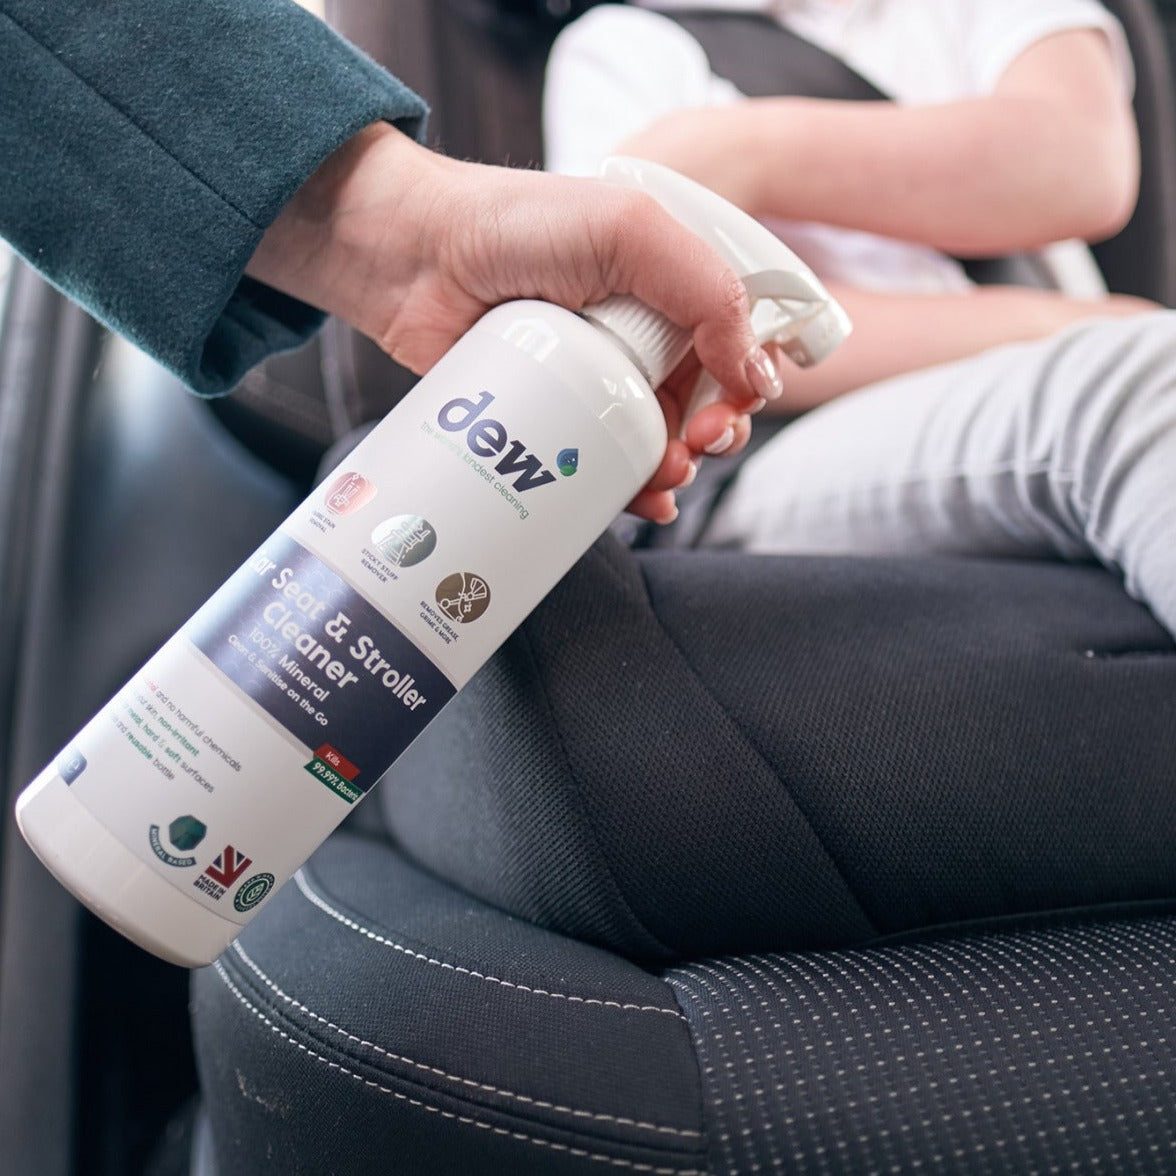 Dew: medida de limpieza para asientos de automóvil y carros de cuidado infantil de 500 ml